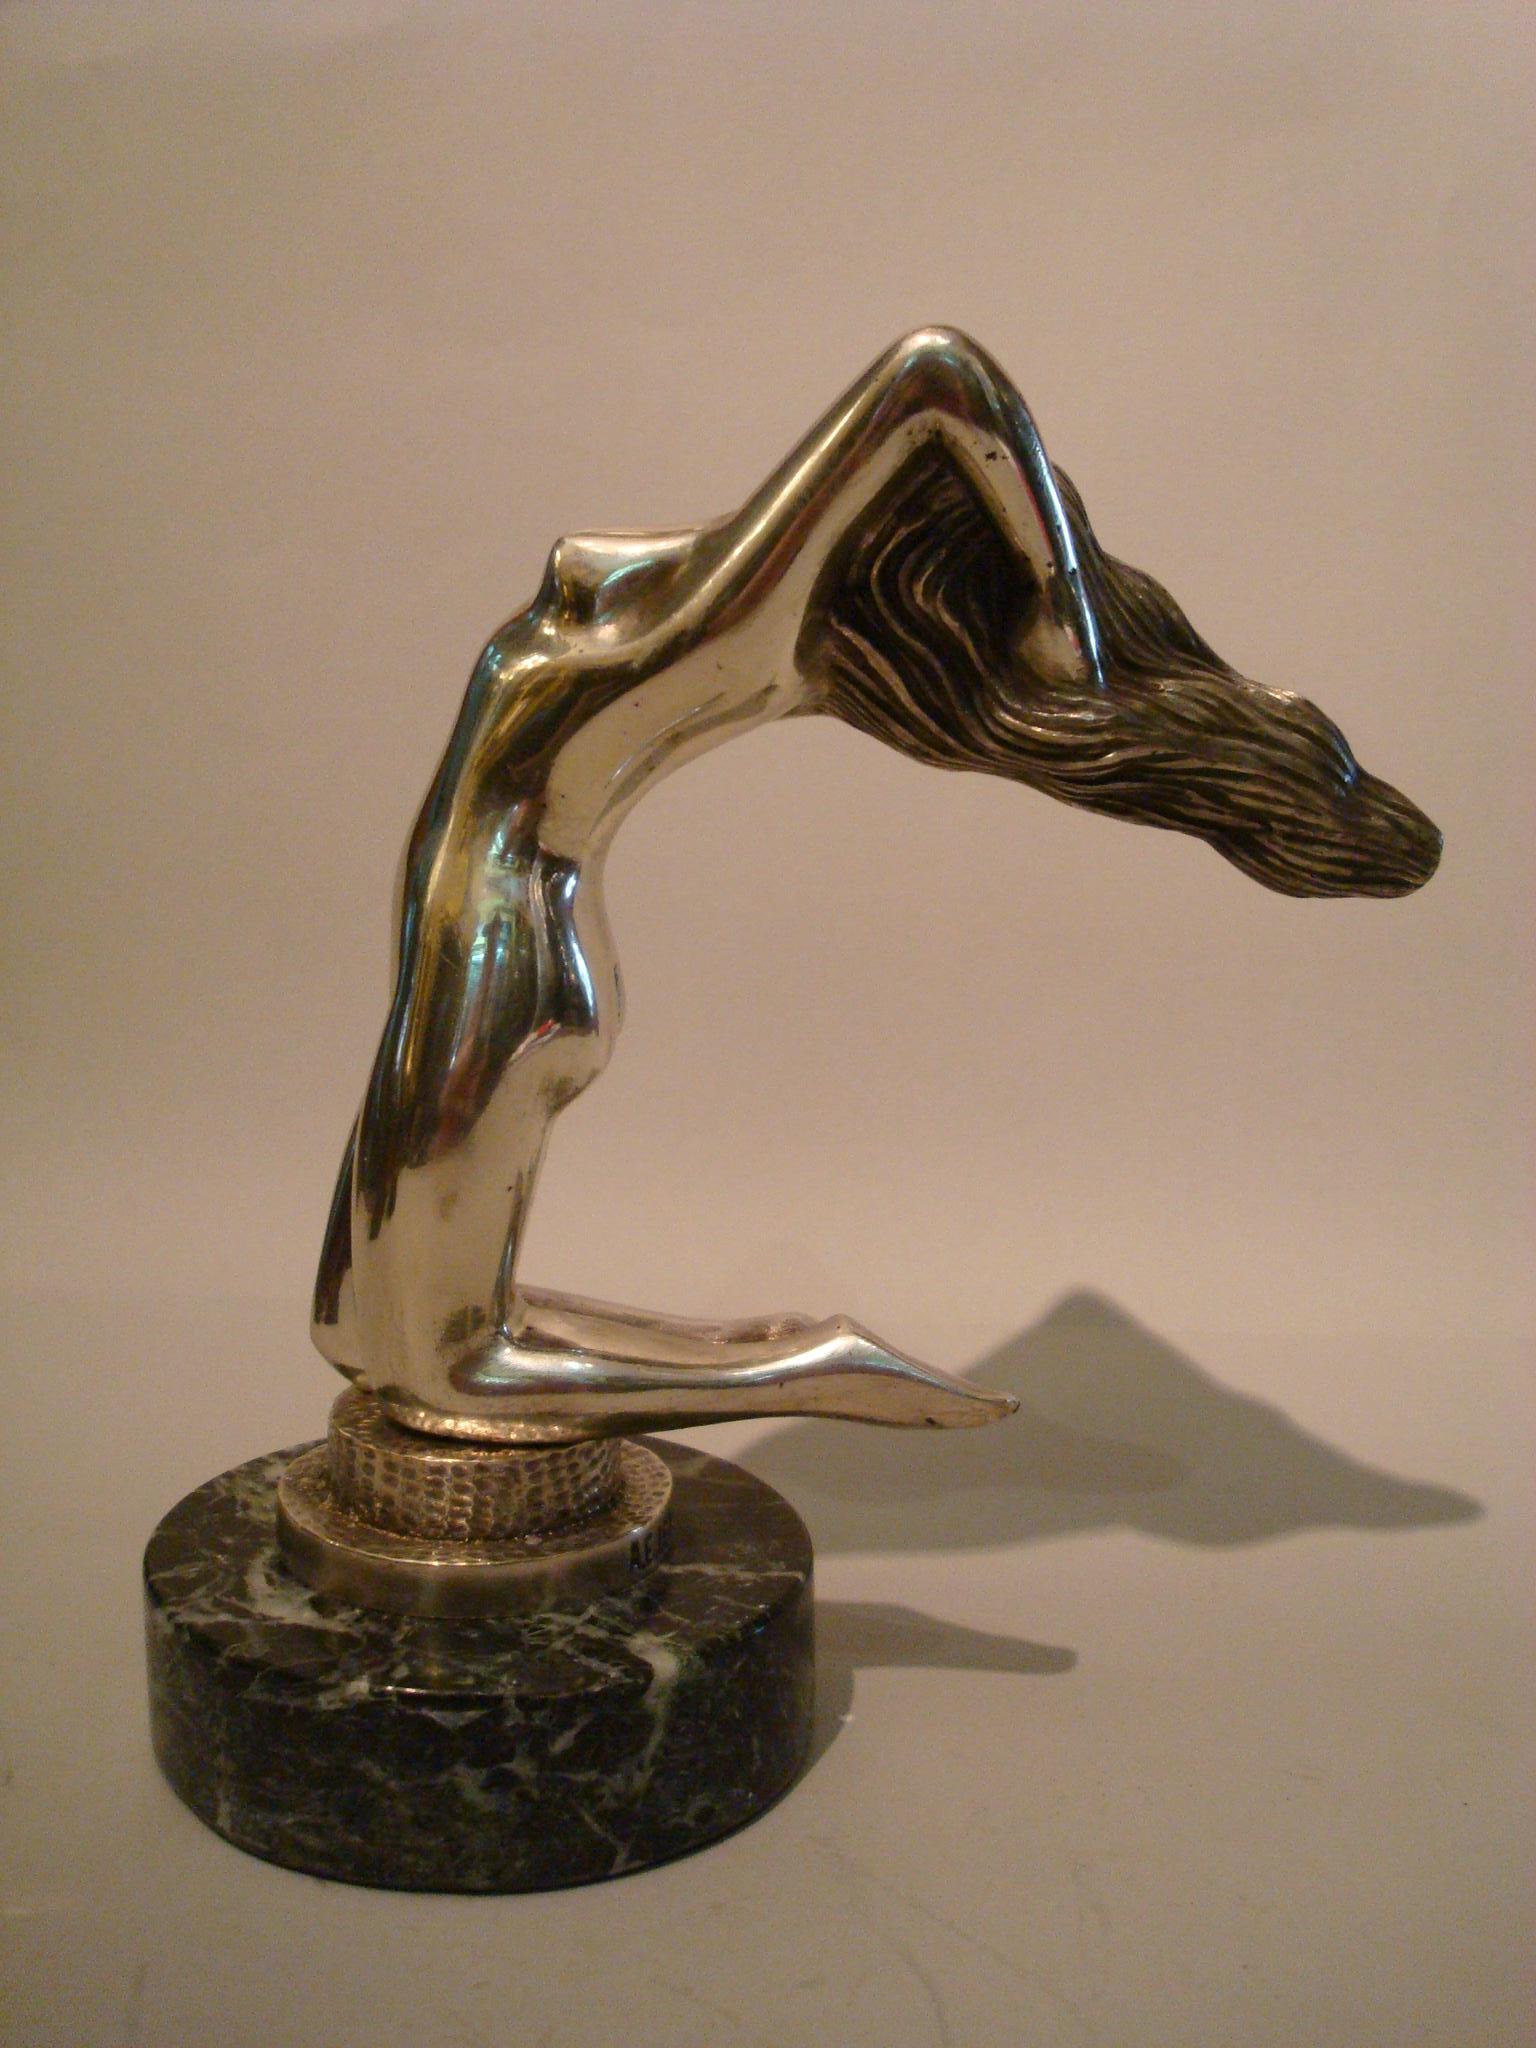 1920s Art Deco kneeling nude (erotic) woman bronze sculpture paperweight.